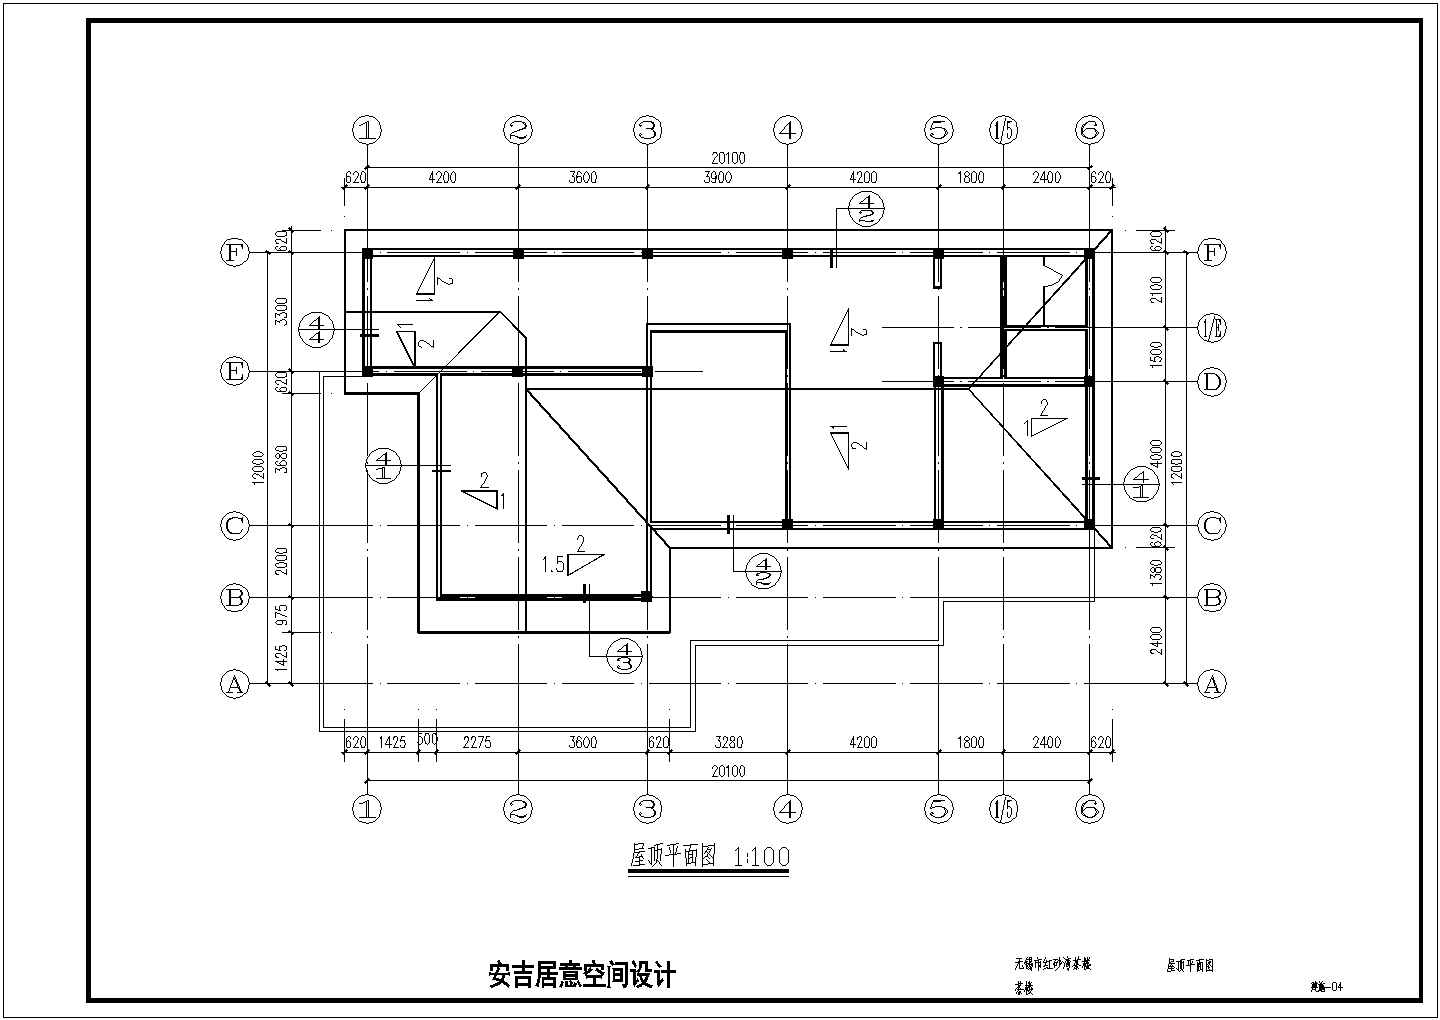 二层框架结构锁具茶楼建筑设计图